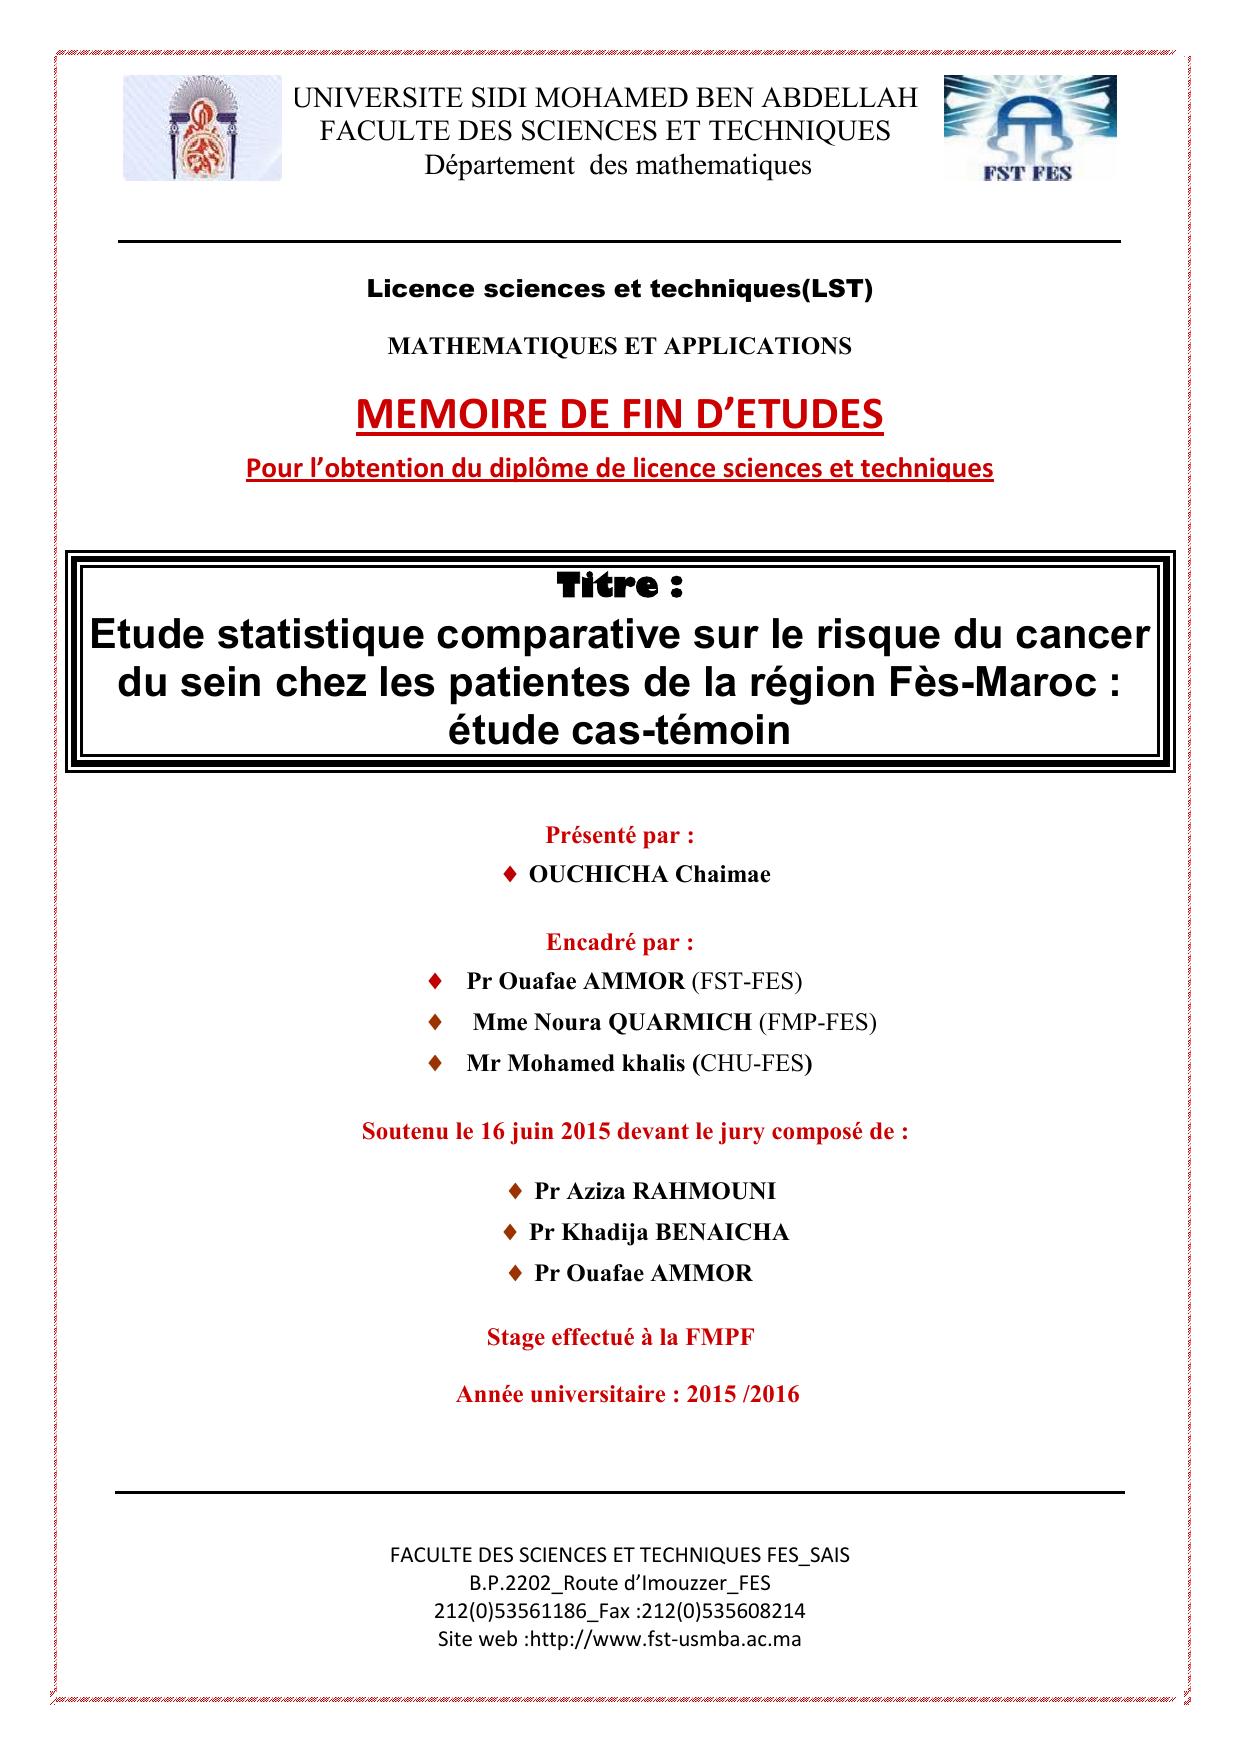 Etude statistique comparative sur le risque du cancer du sein chez les patientes de la région Fès-Maroc : étude cas-témoin